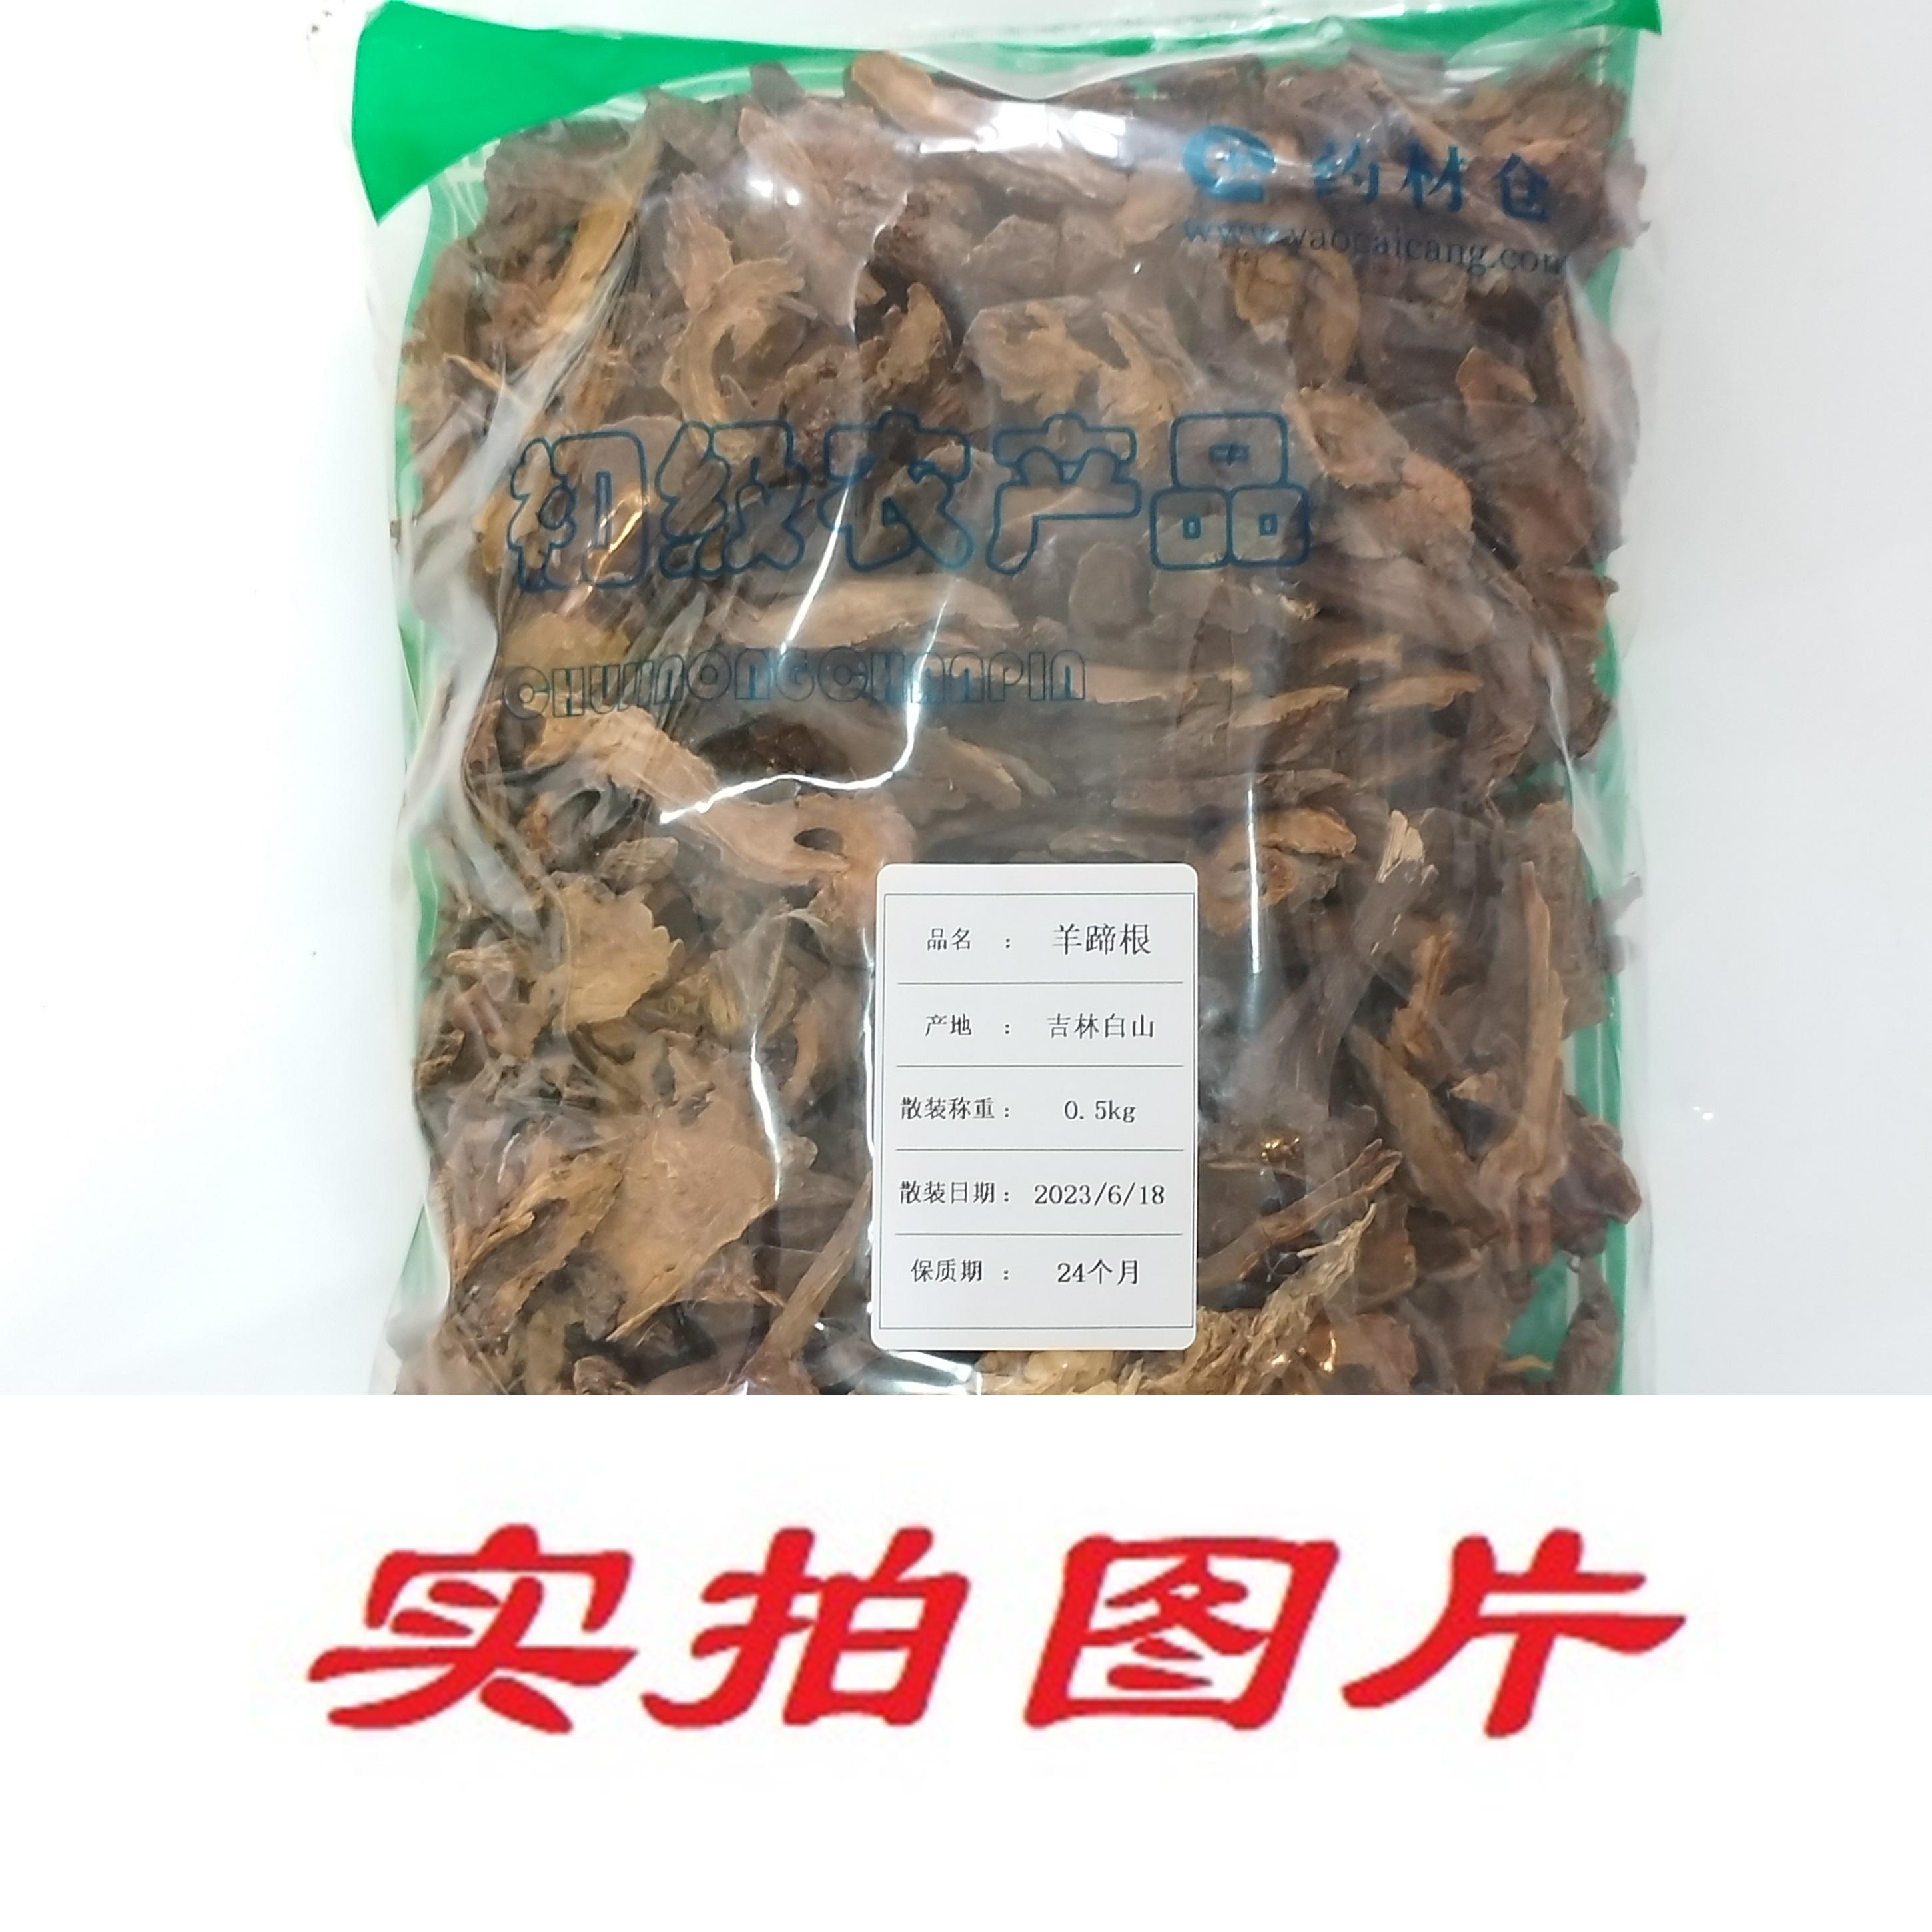 【】羊蹄根0.5kg-农副产品